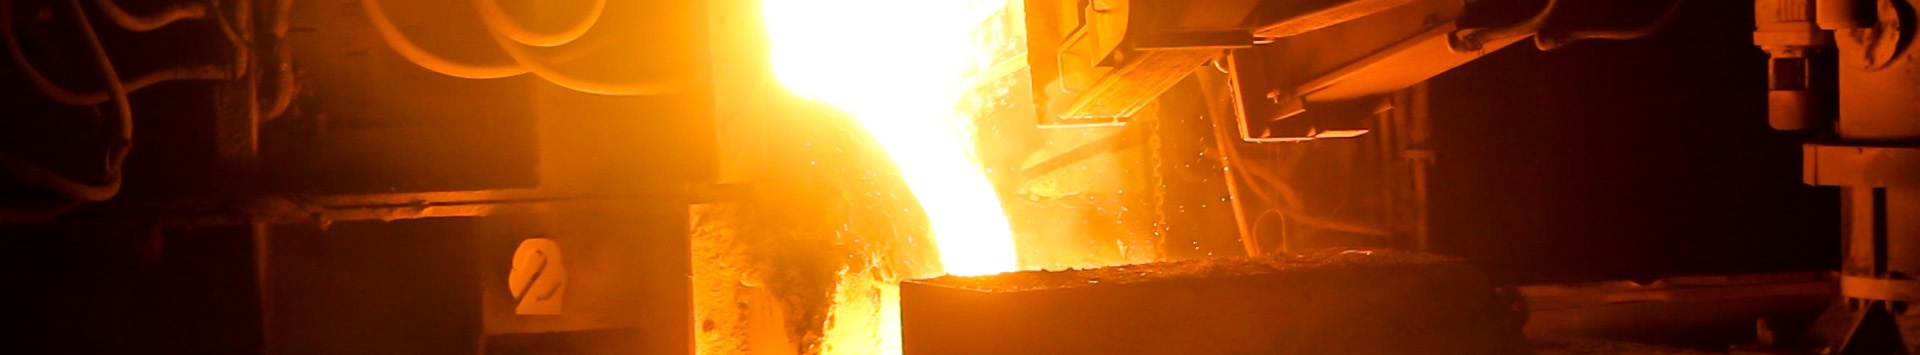 Webinar EcoTermIP  Ecoeficincia dos Processos Trmicos Industriais no setor da Metalurgia e Metalomecnica